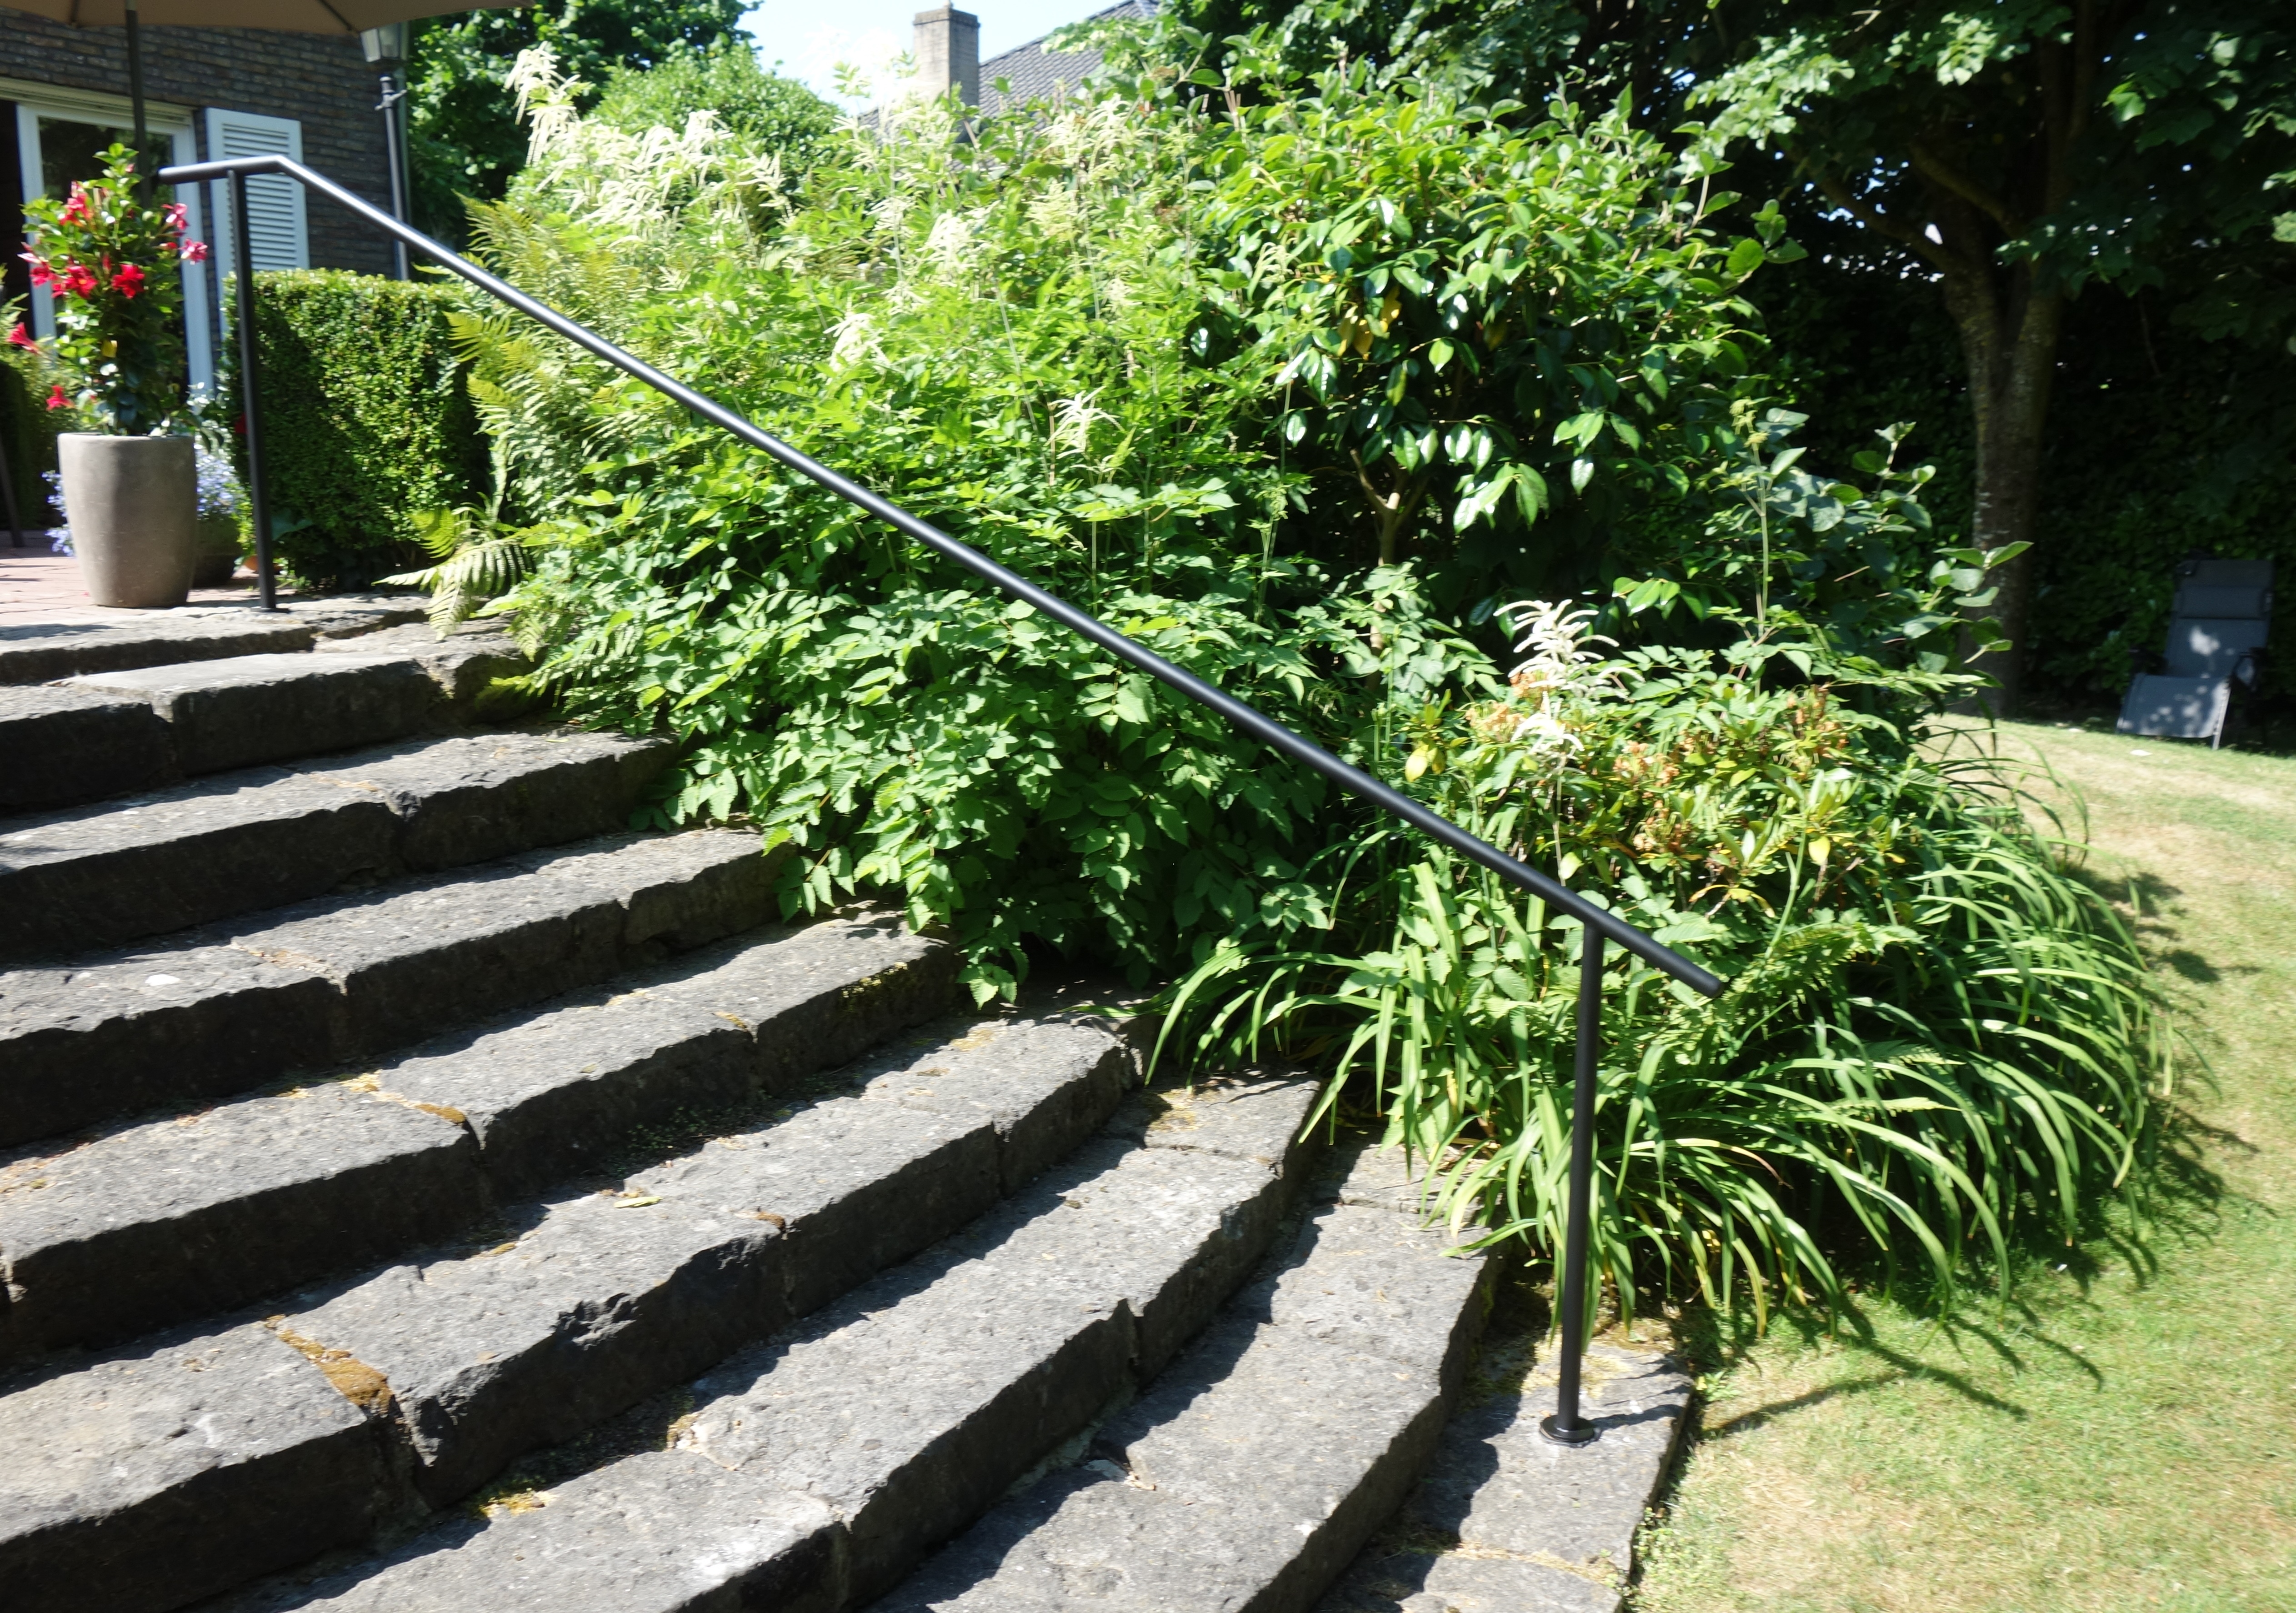 metalen balustrade op buitentrap naar tuin